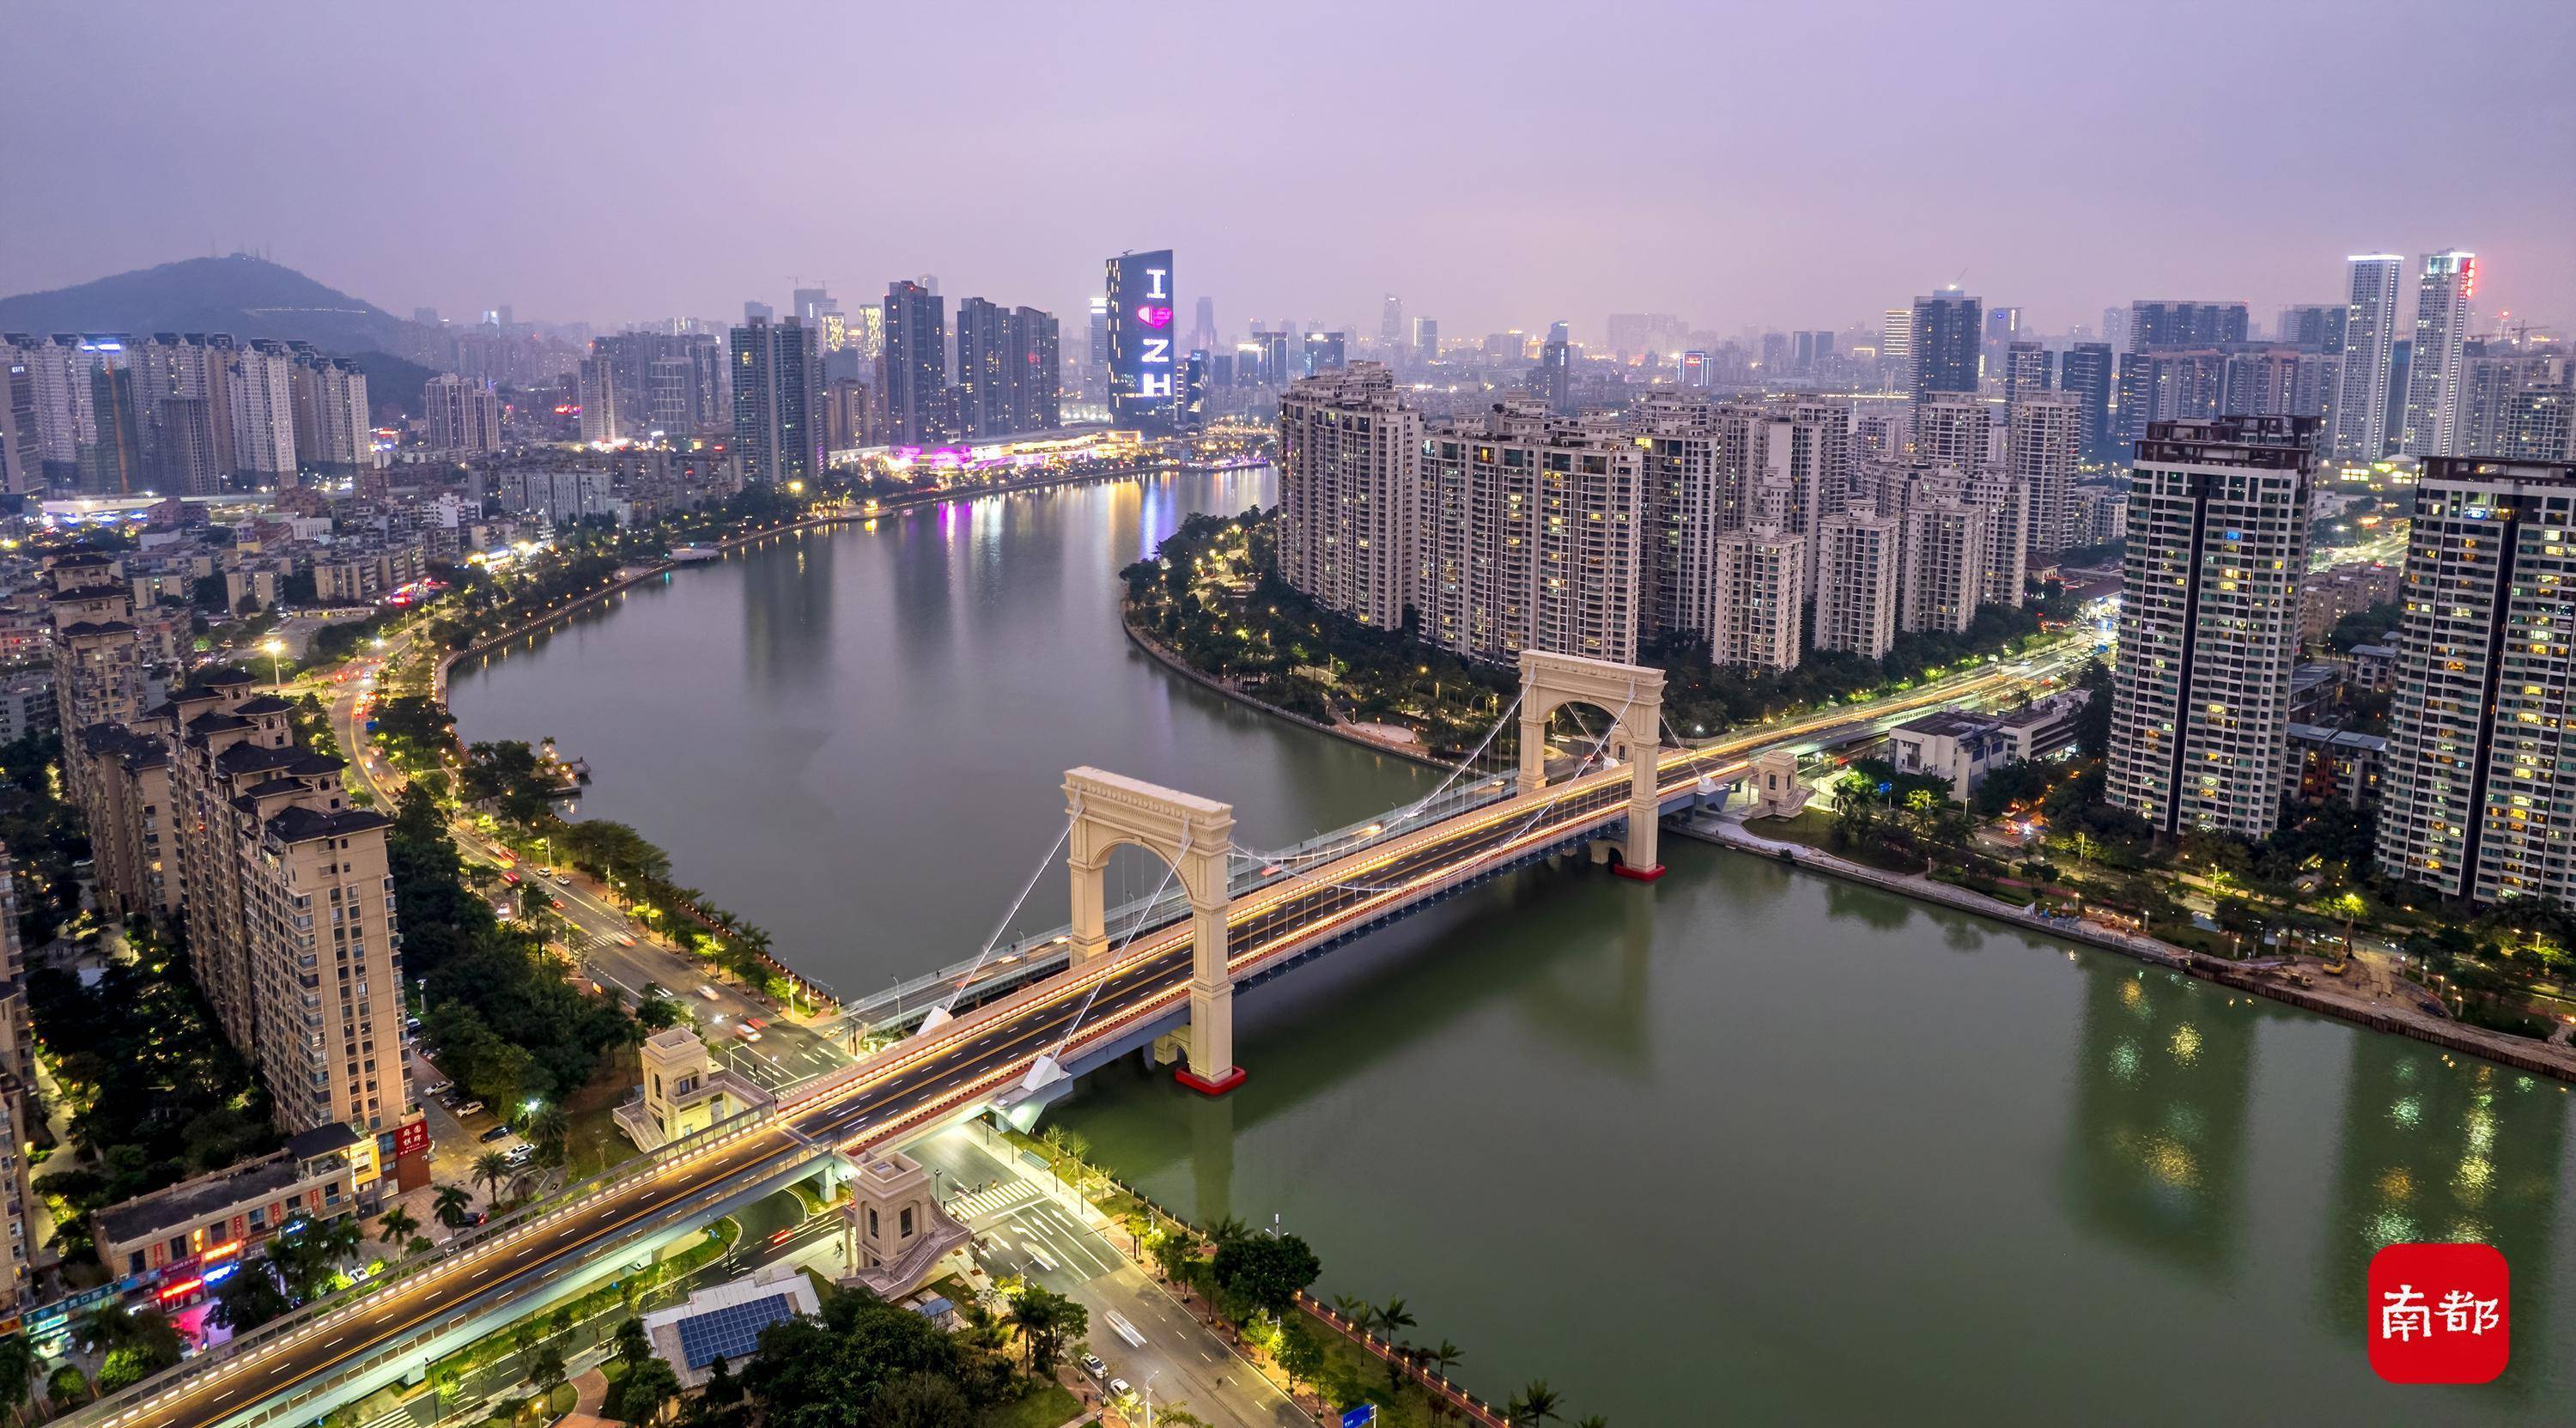 合川南屏大桥夜景图片